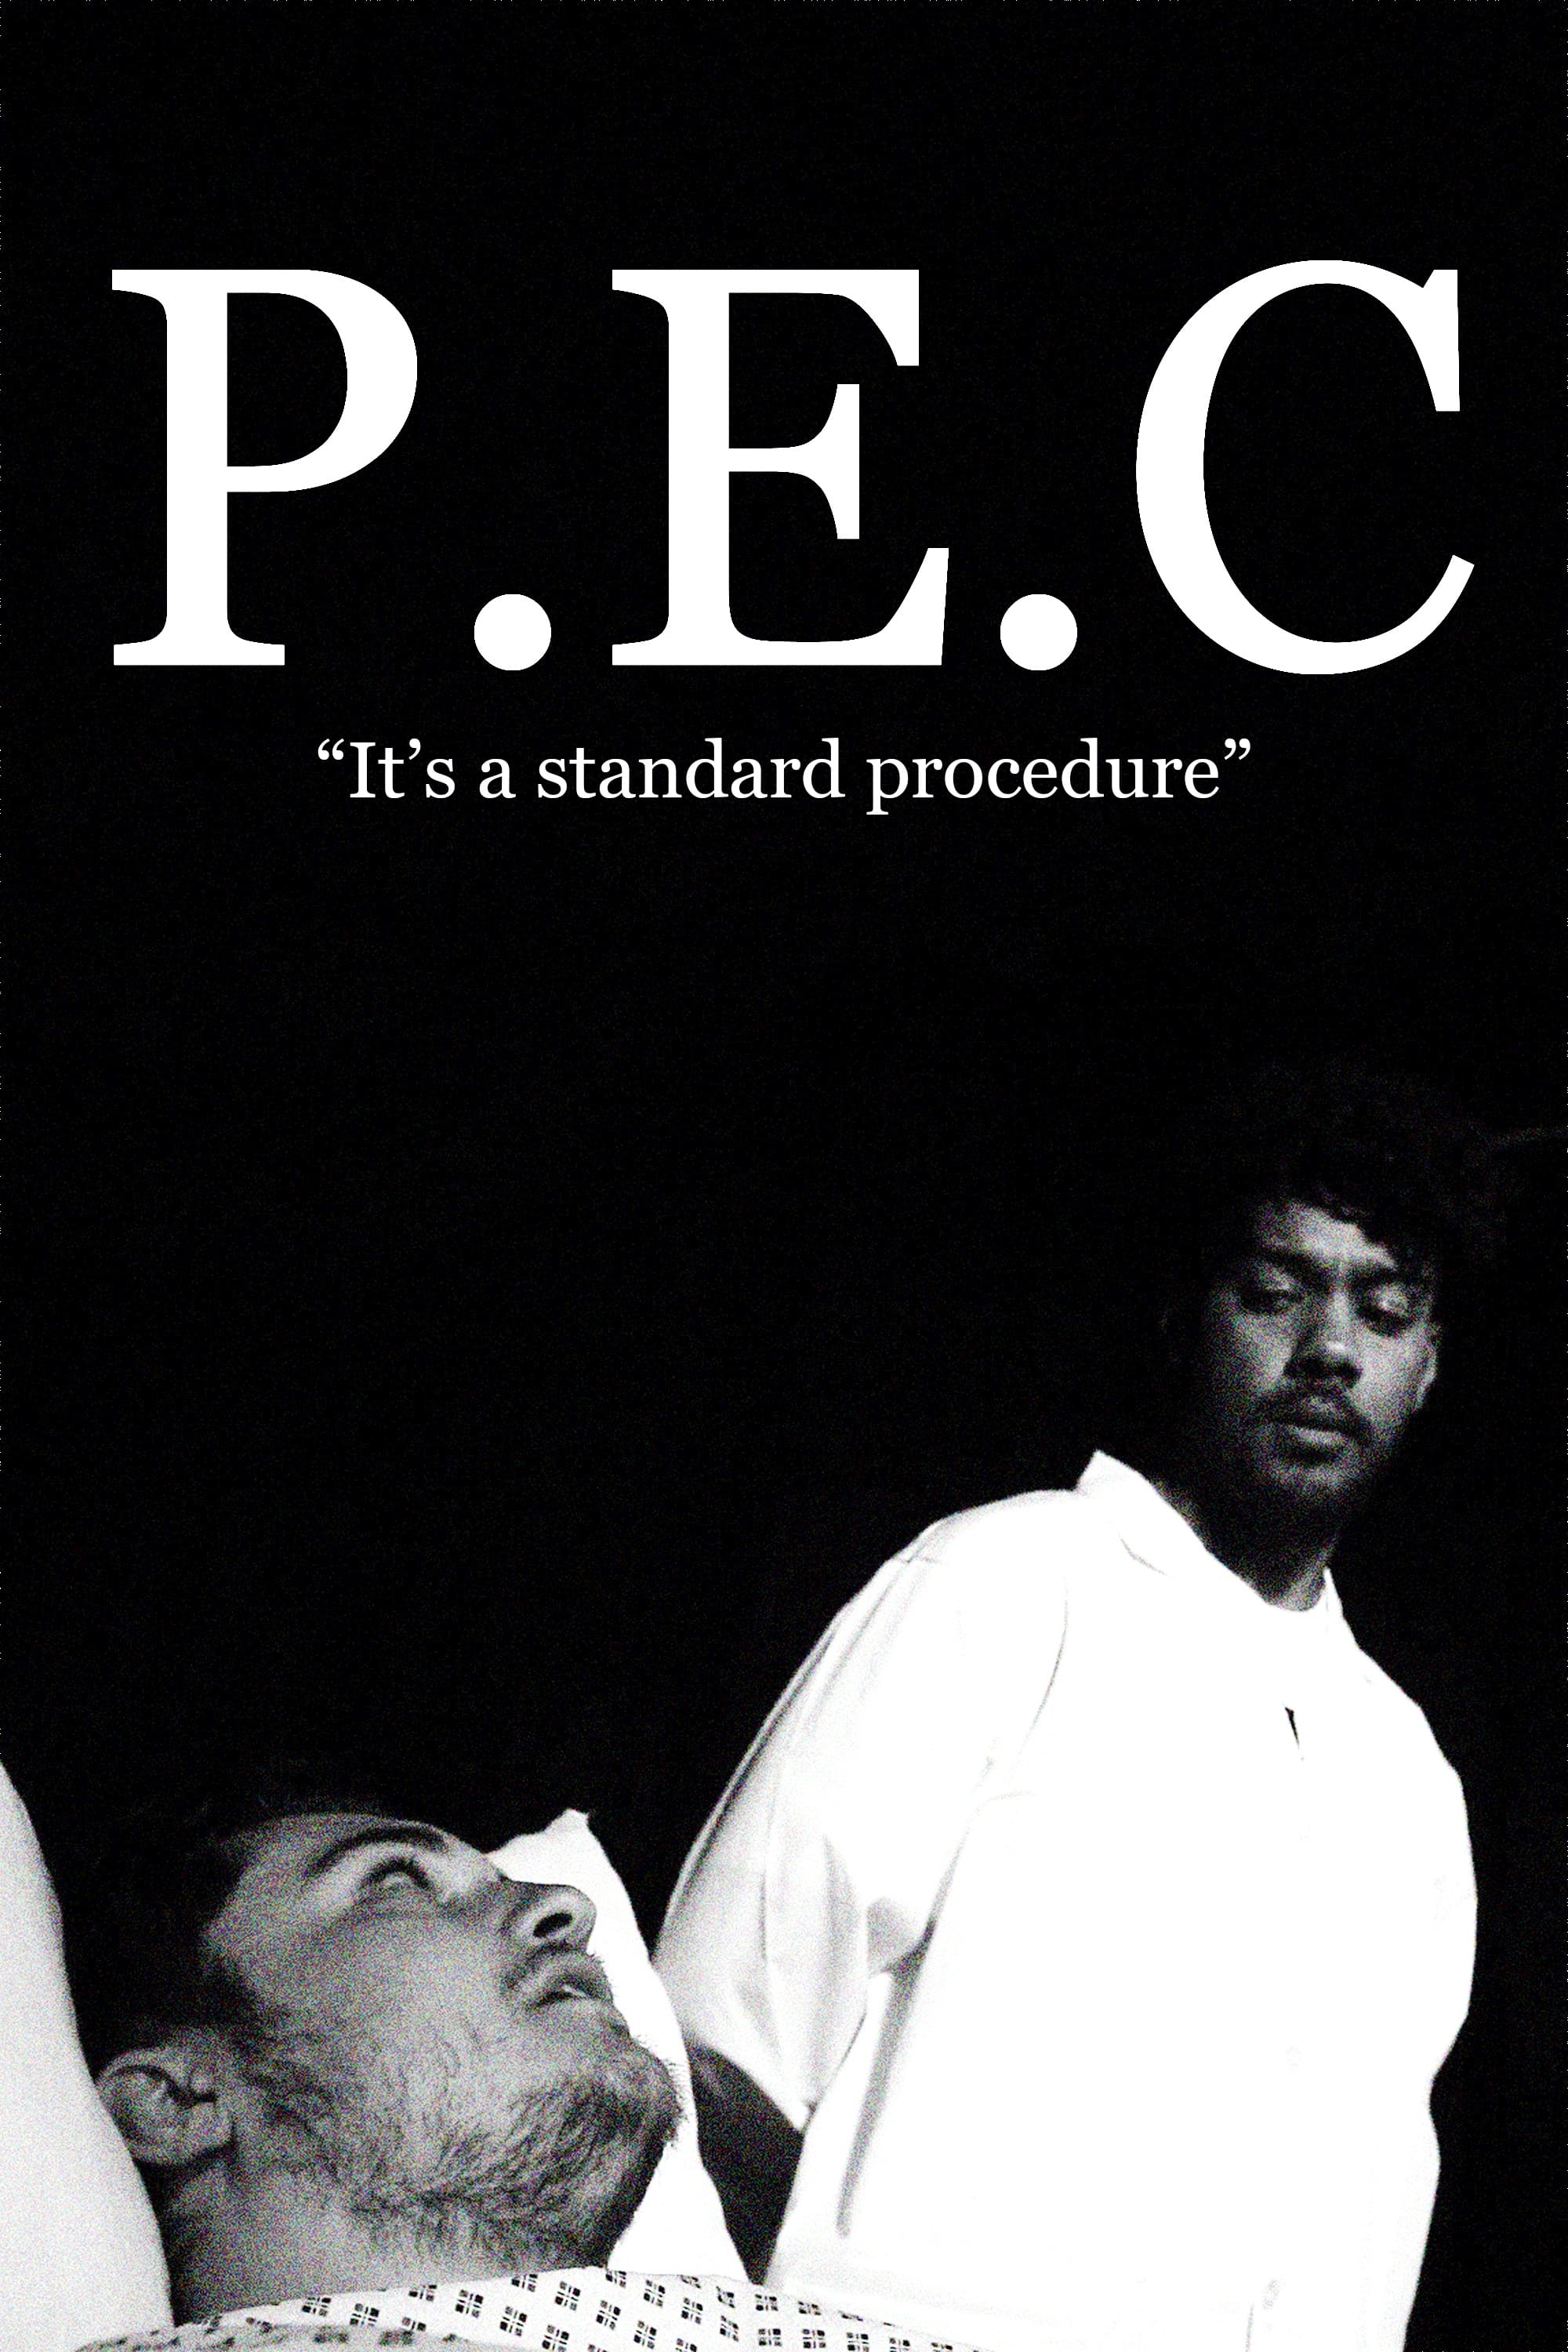 P.E.C